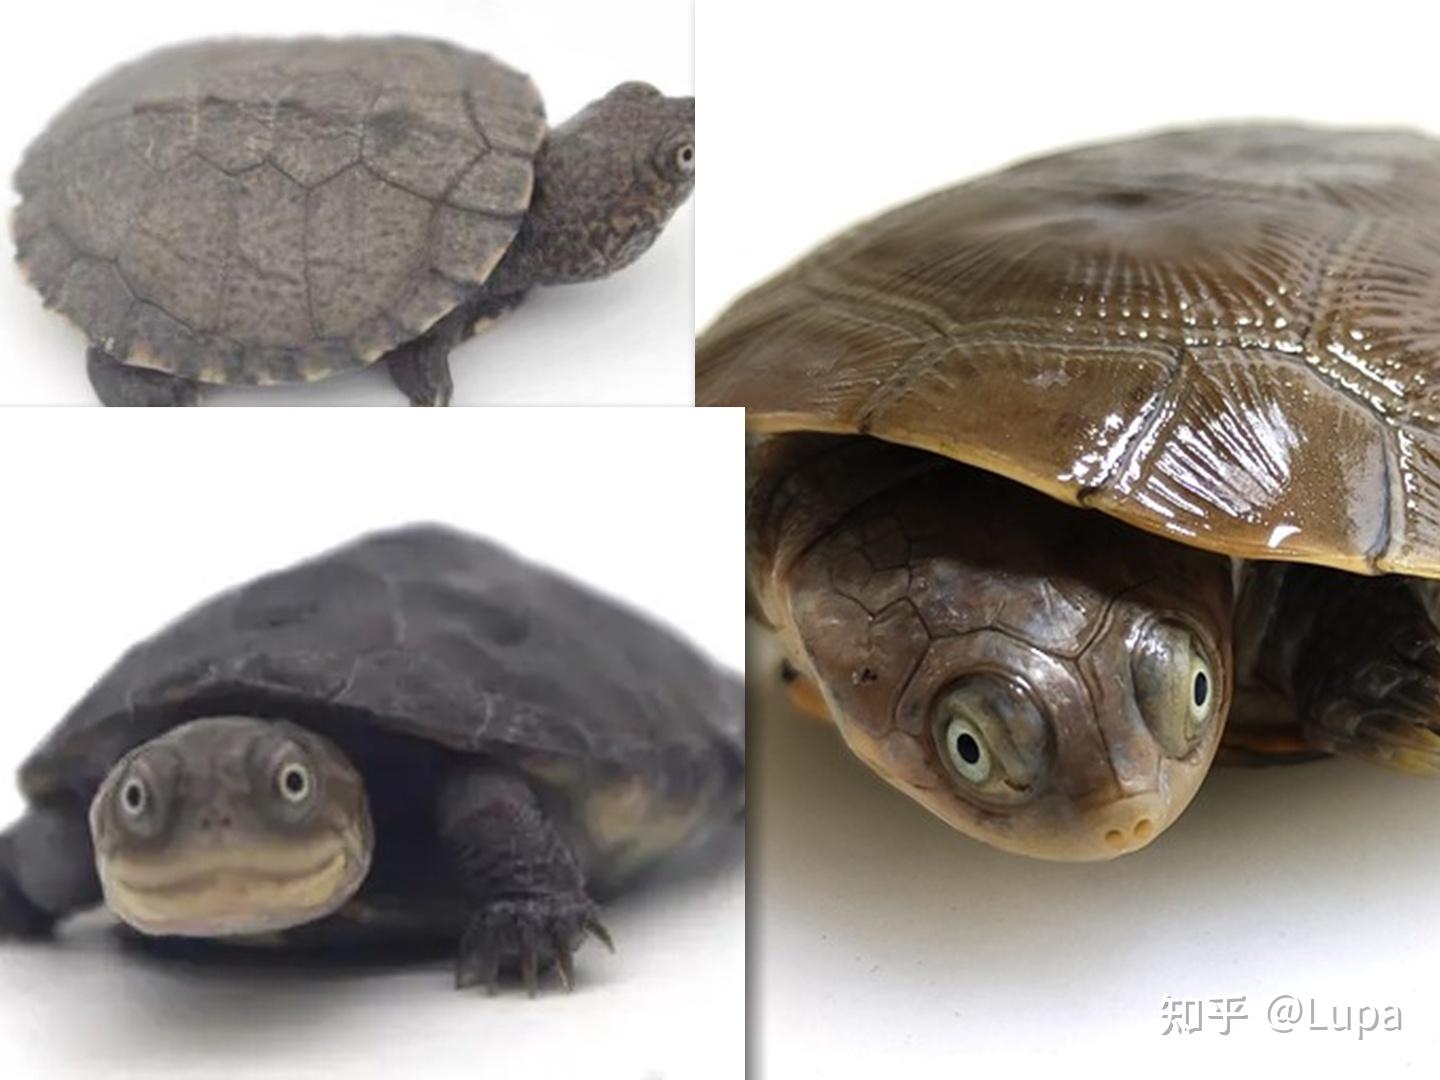 新手养龟选哪种品种的龟类比较好 - 知乎